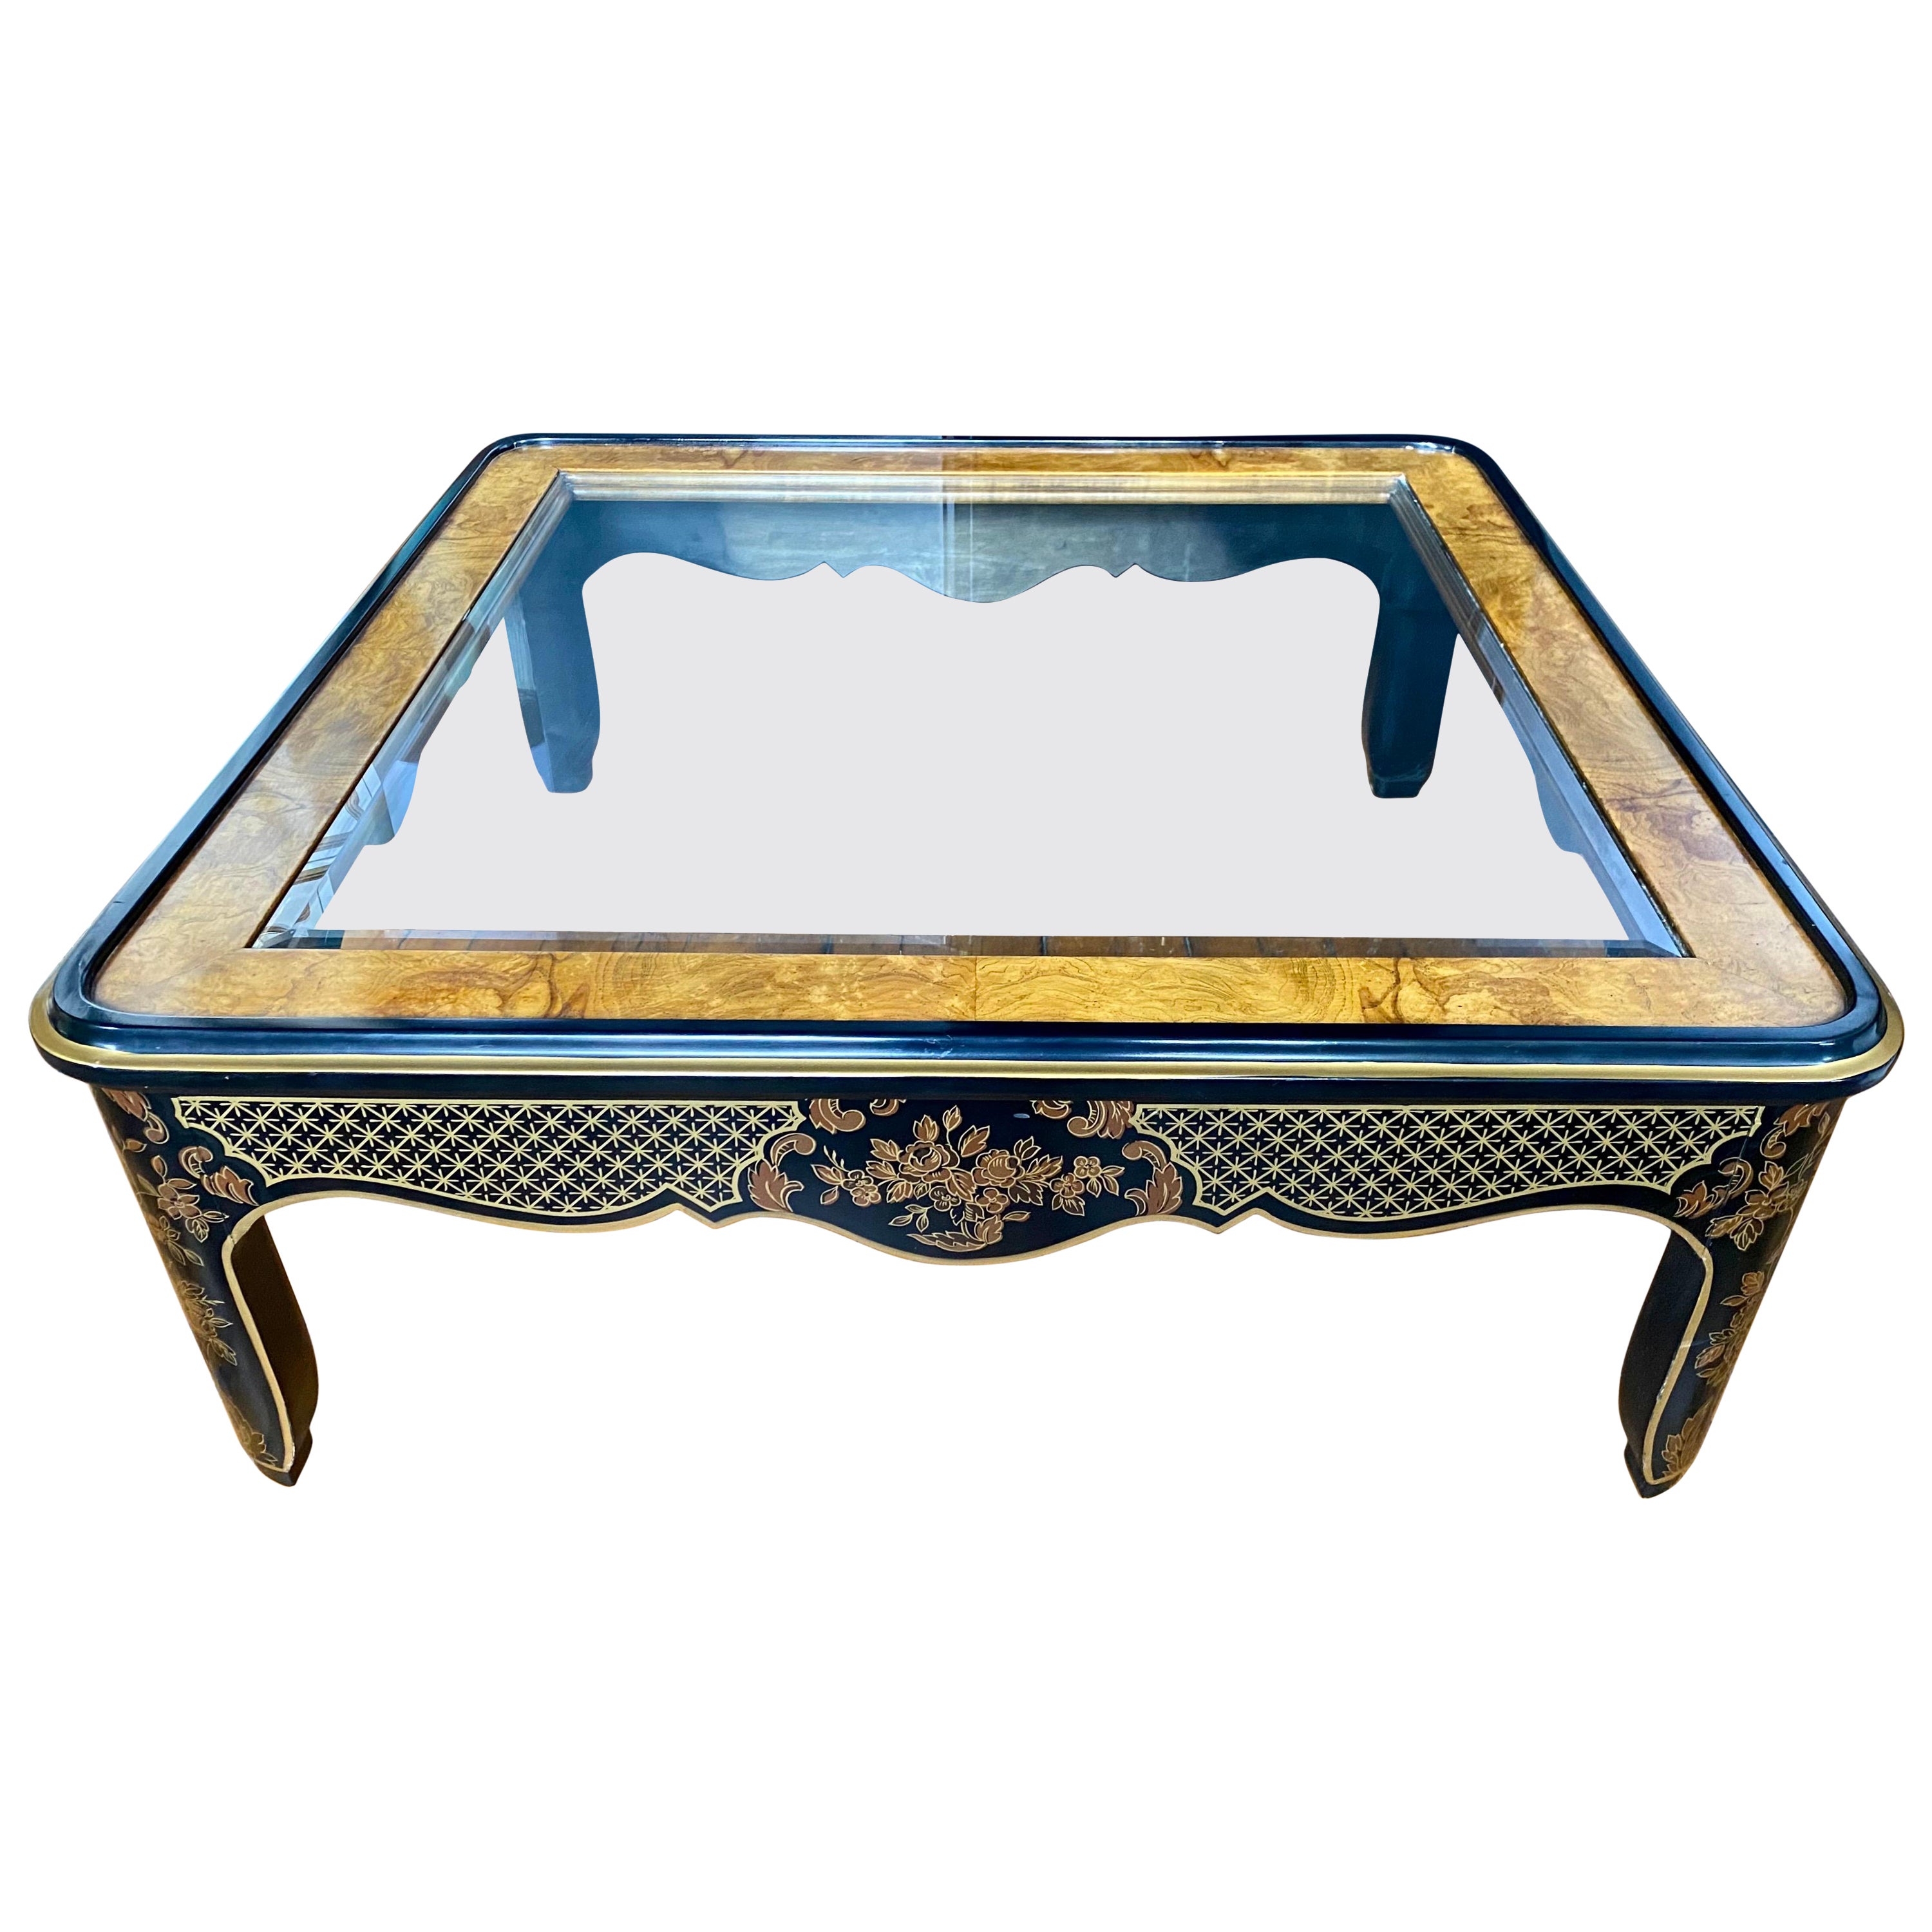 Table basse carrée noire et dorée de style Hollywood Regency Chinoiserie, Drexel Et Cetera